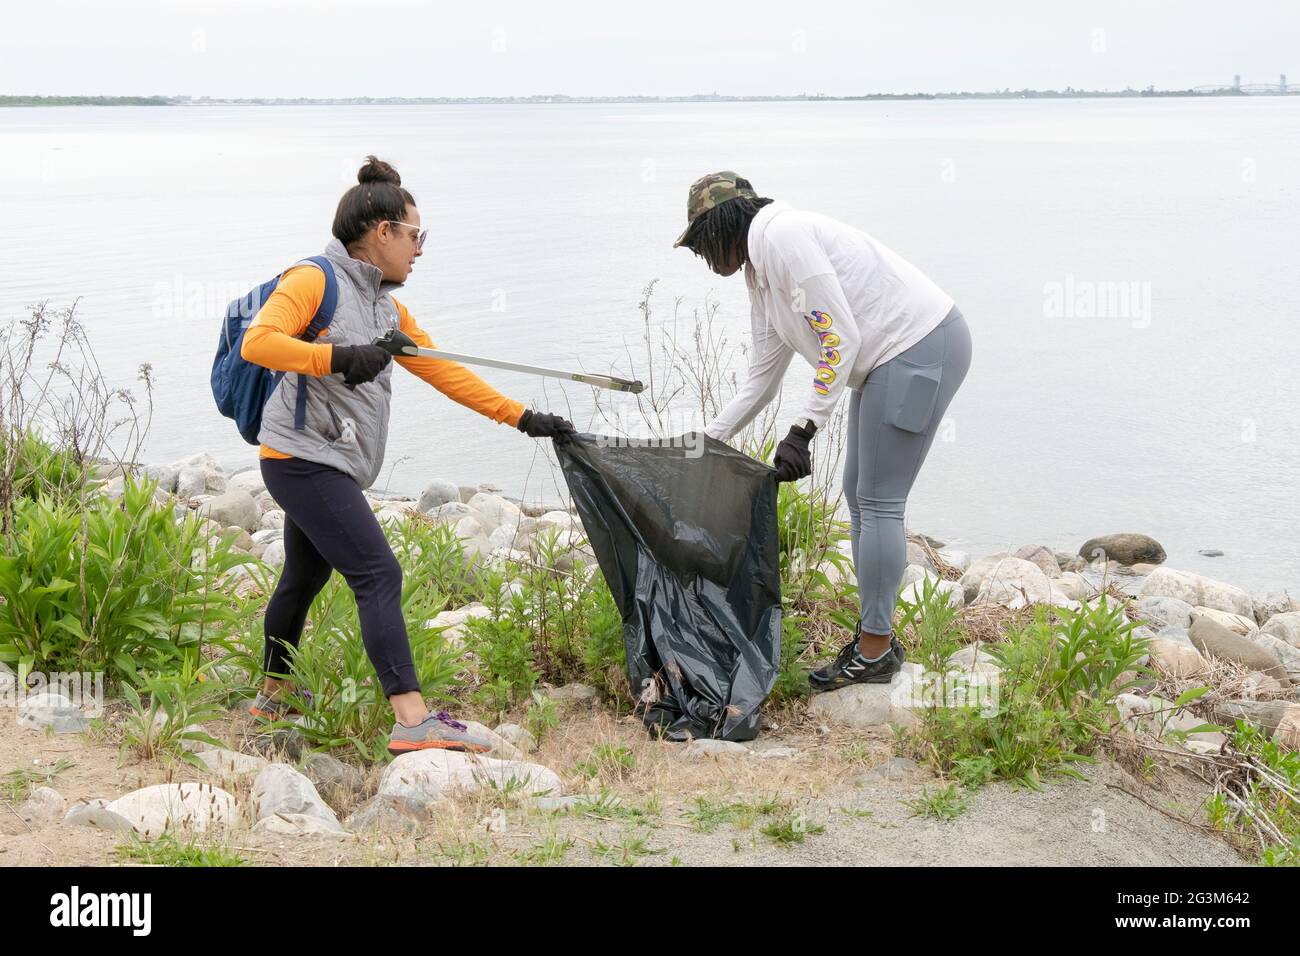 Volontari pulire la spiaggia a Jamaica Bay in Queens come parte del progetto 2021 Primhvi Beach Cleanup. Imn Queens, New York. Foto Stock